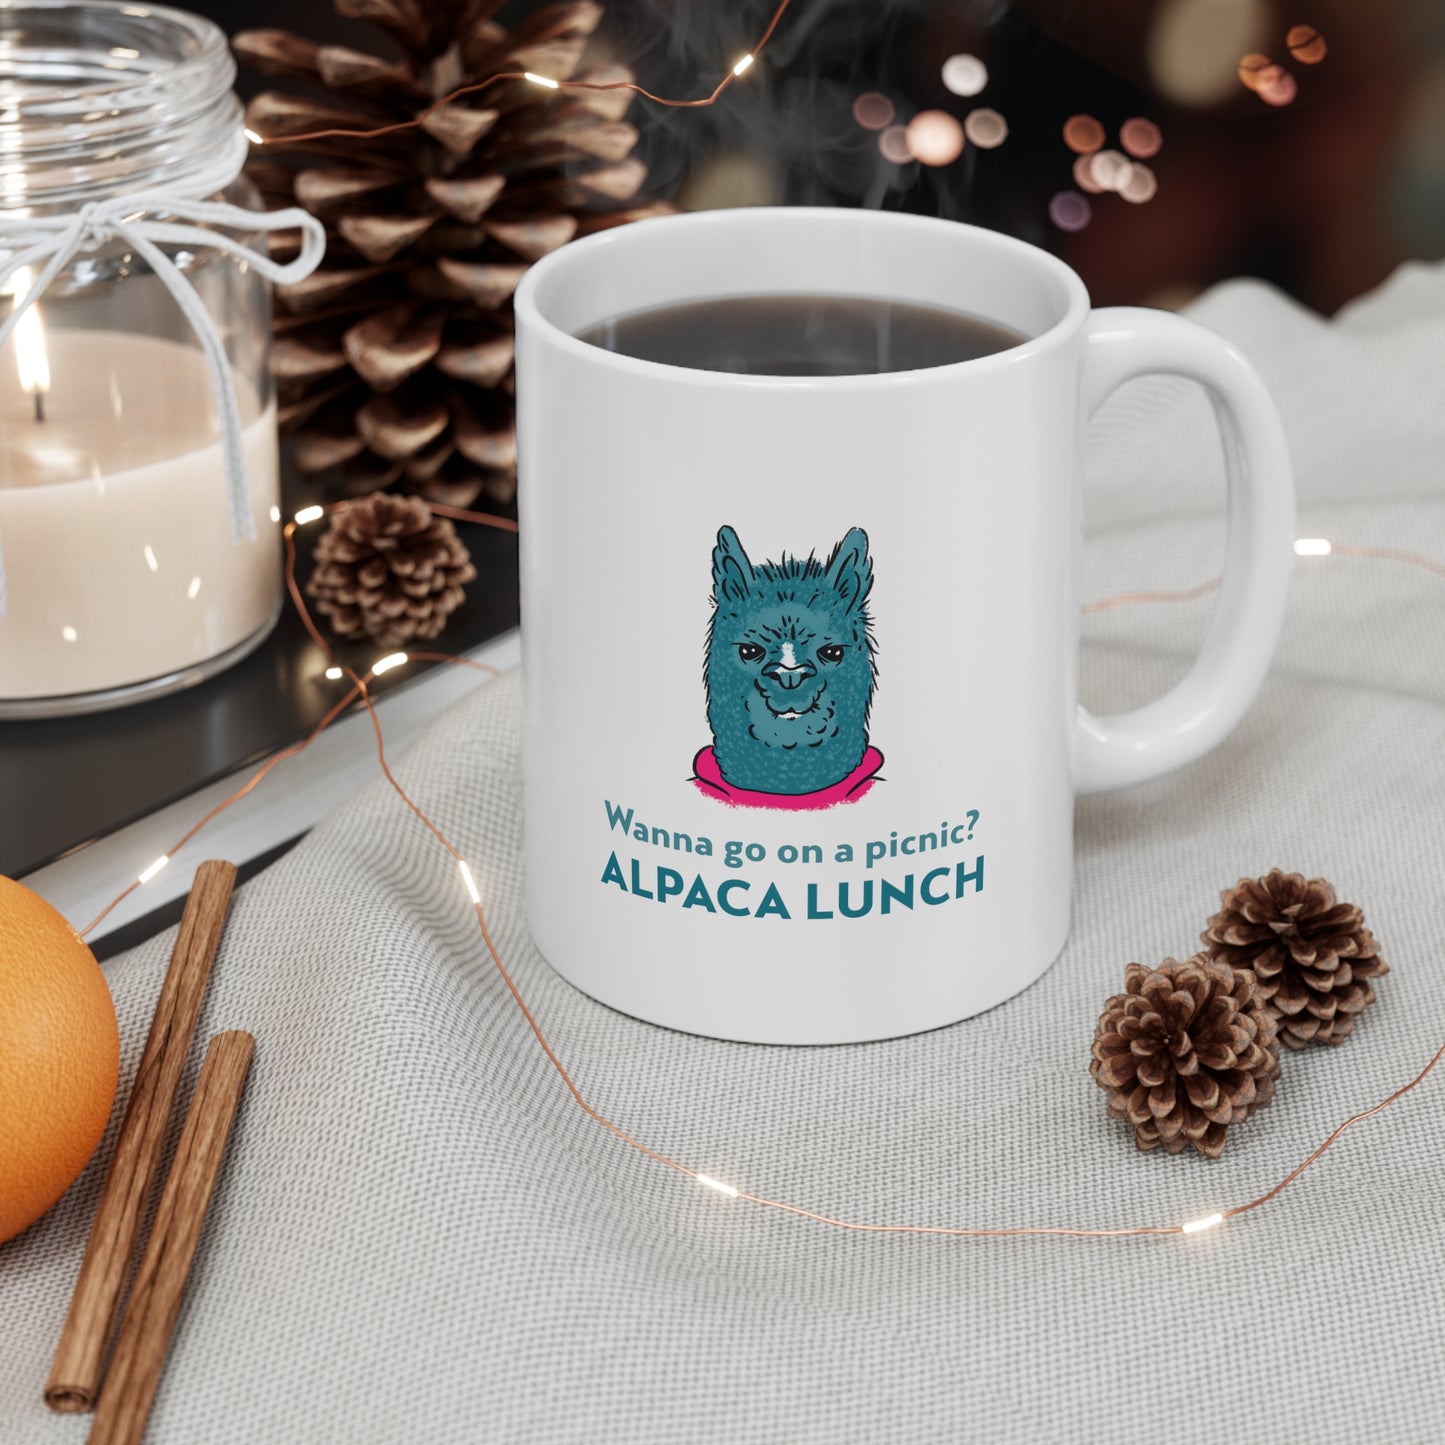 Alpacha Lunch Ceramic Mug 11oz